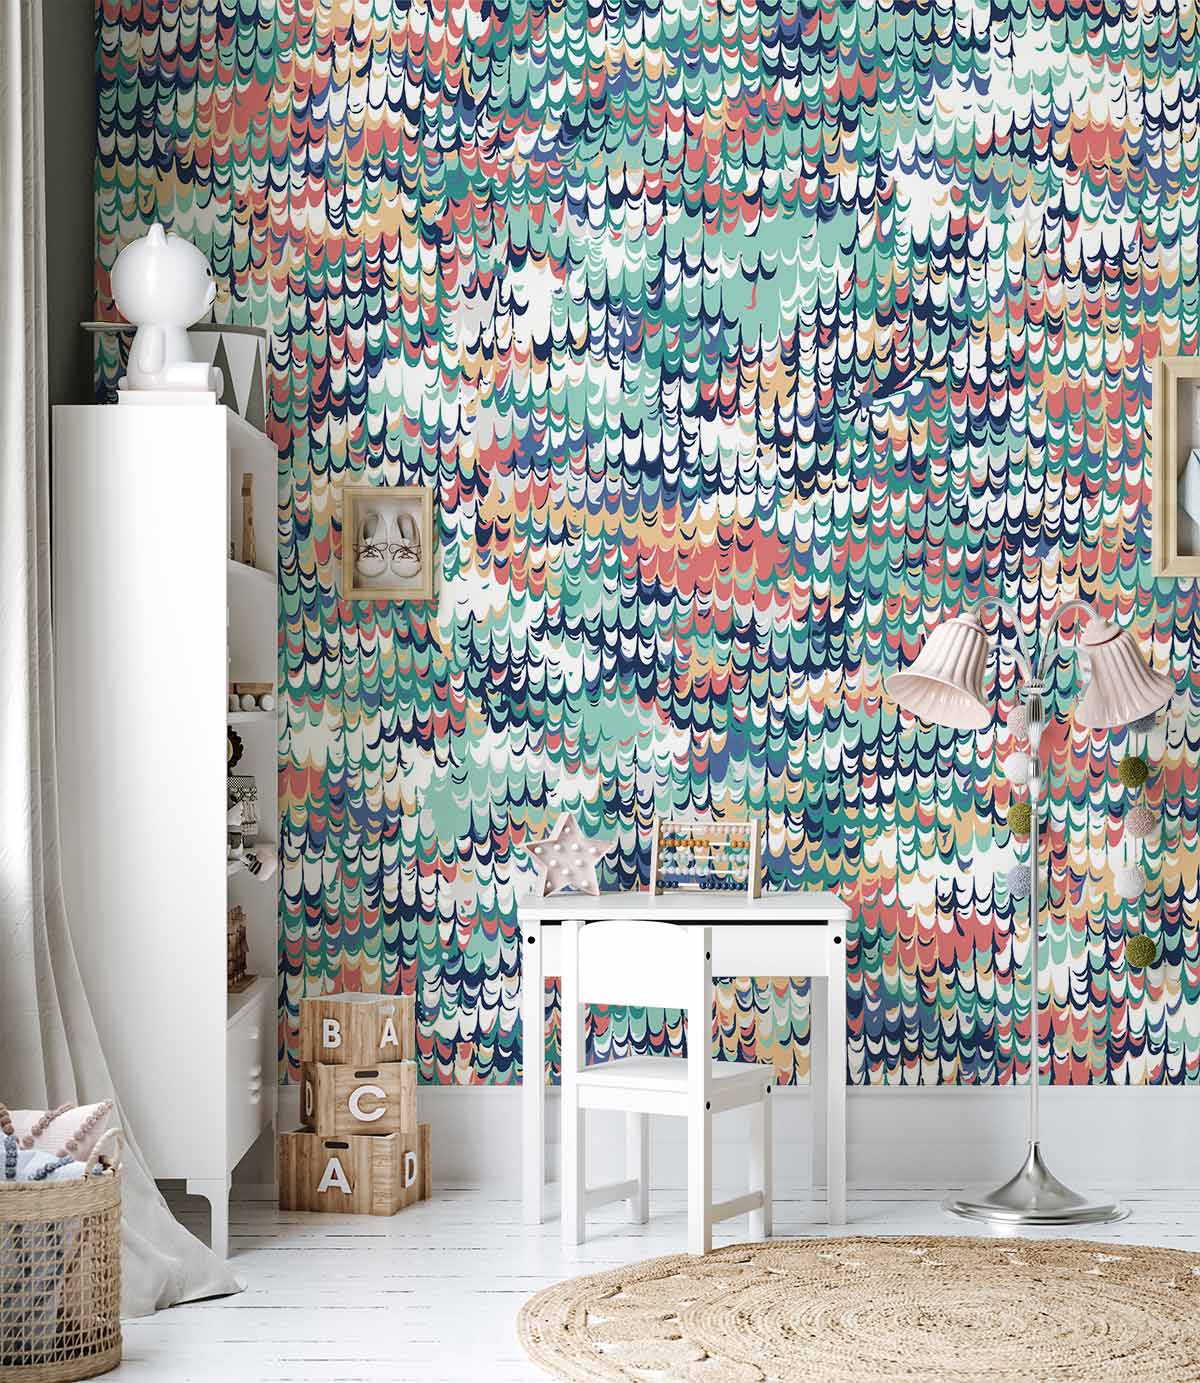 an original wallpaper design with a distinctive texture pattern